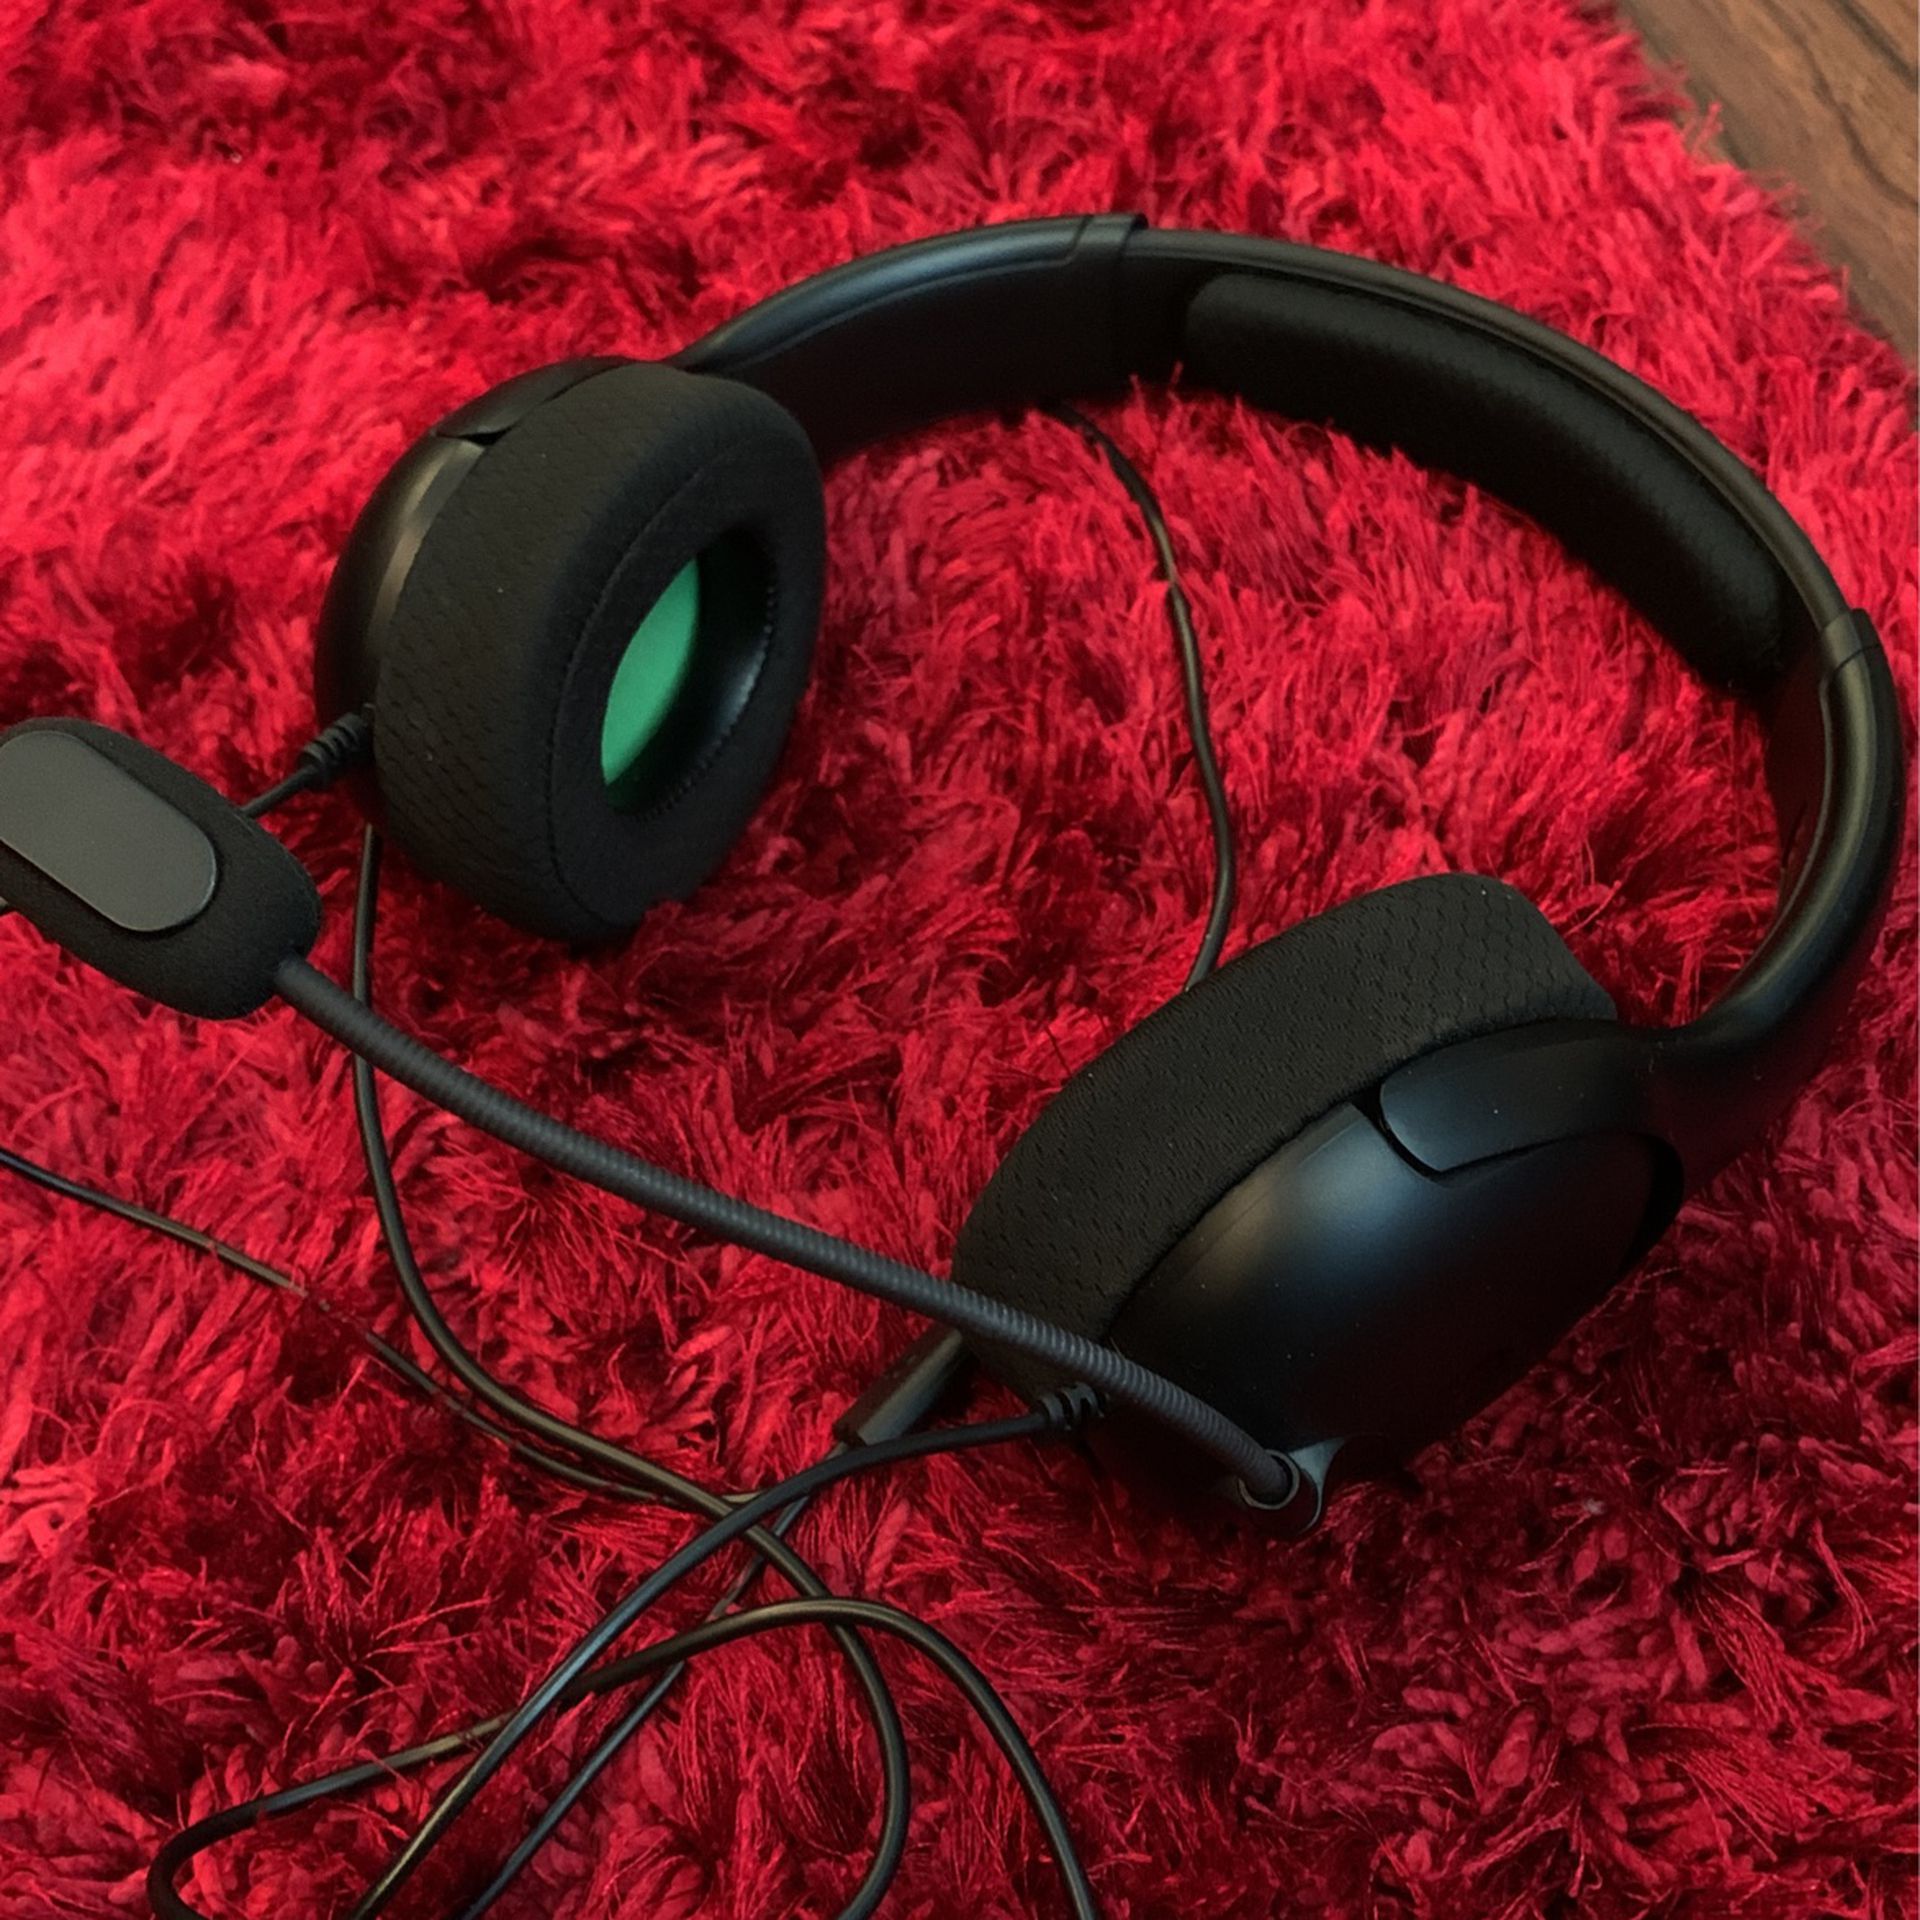 Xbox One Headphones 